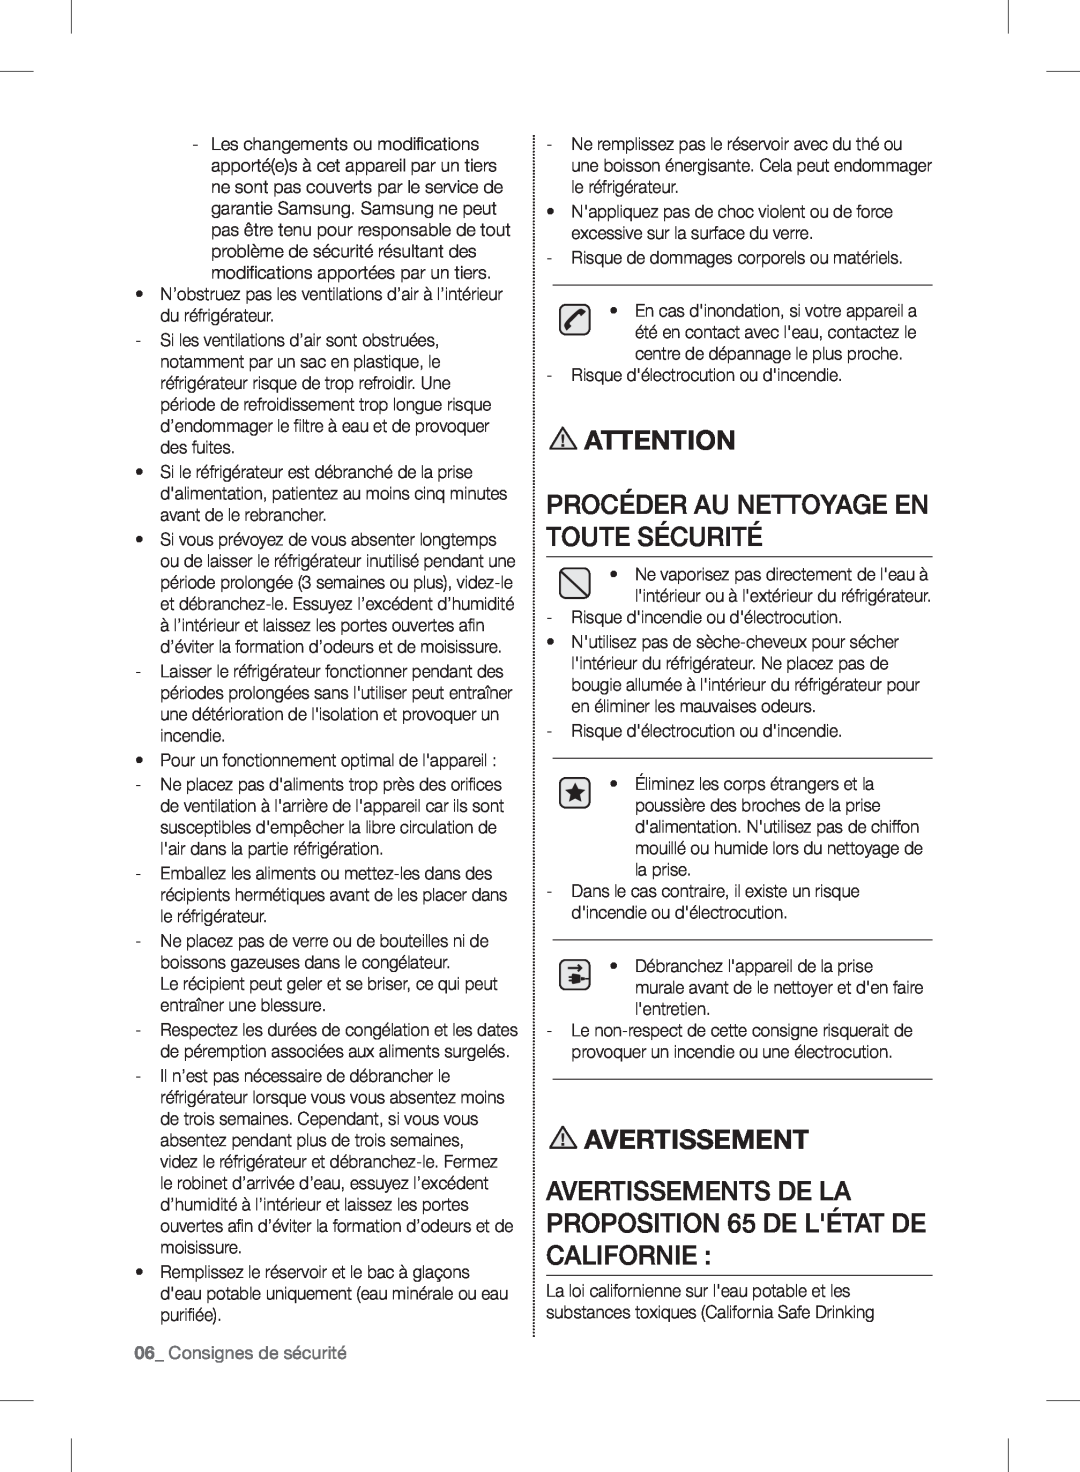 Samsung RF24FSEDBSR user manual Procéder Au Nettoyage En Toute Sécurité, 06_ Consignes de sécurité, Avertissement 